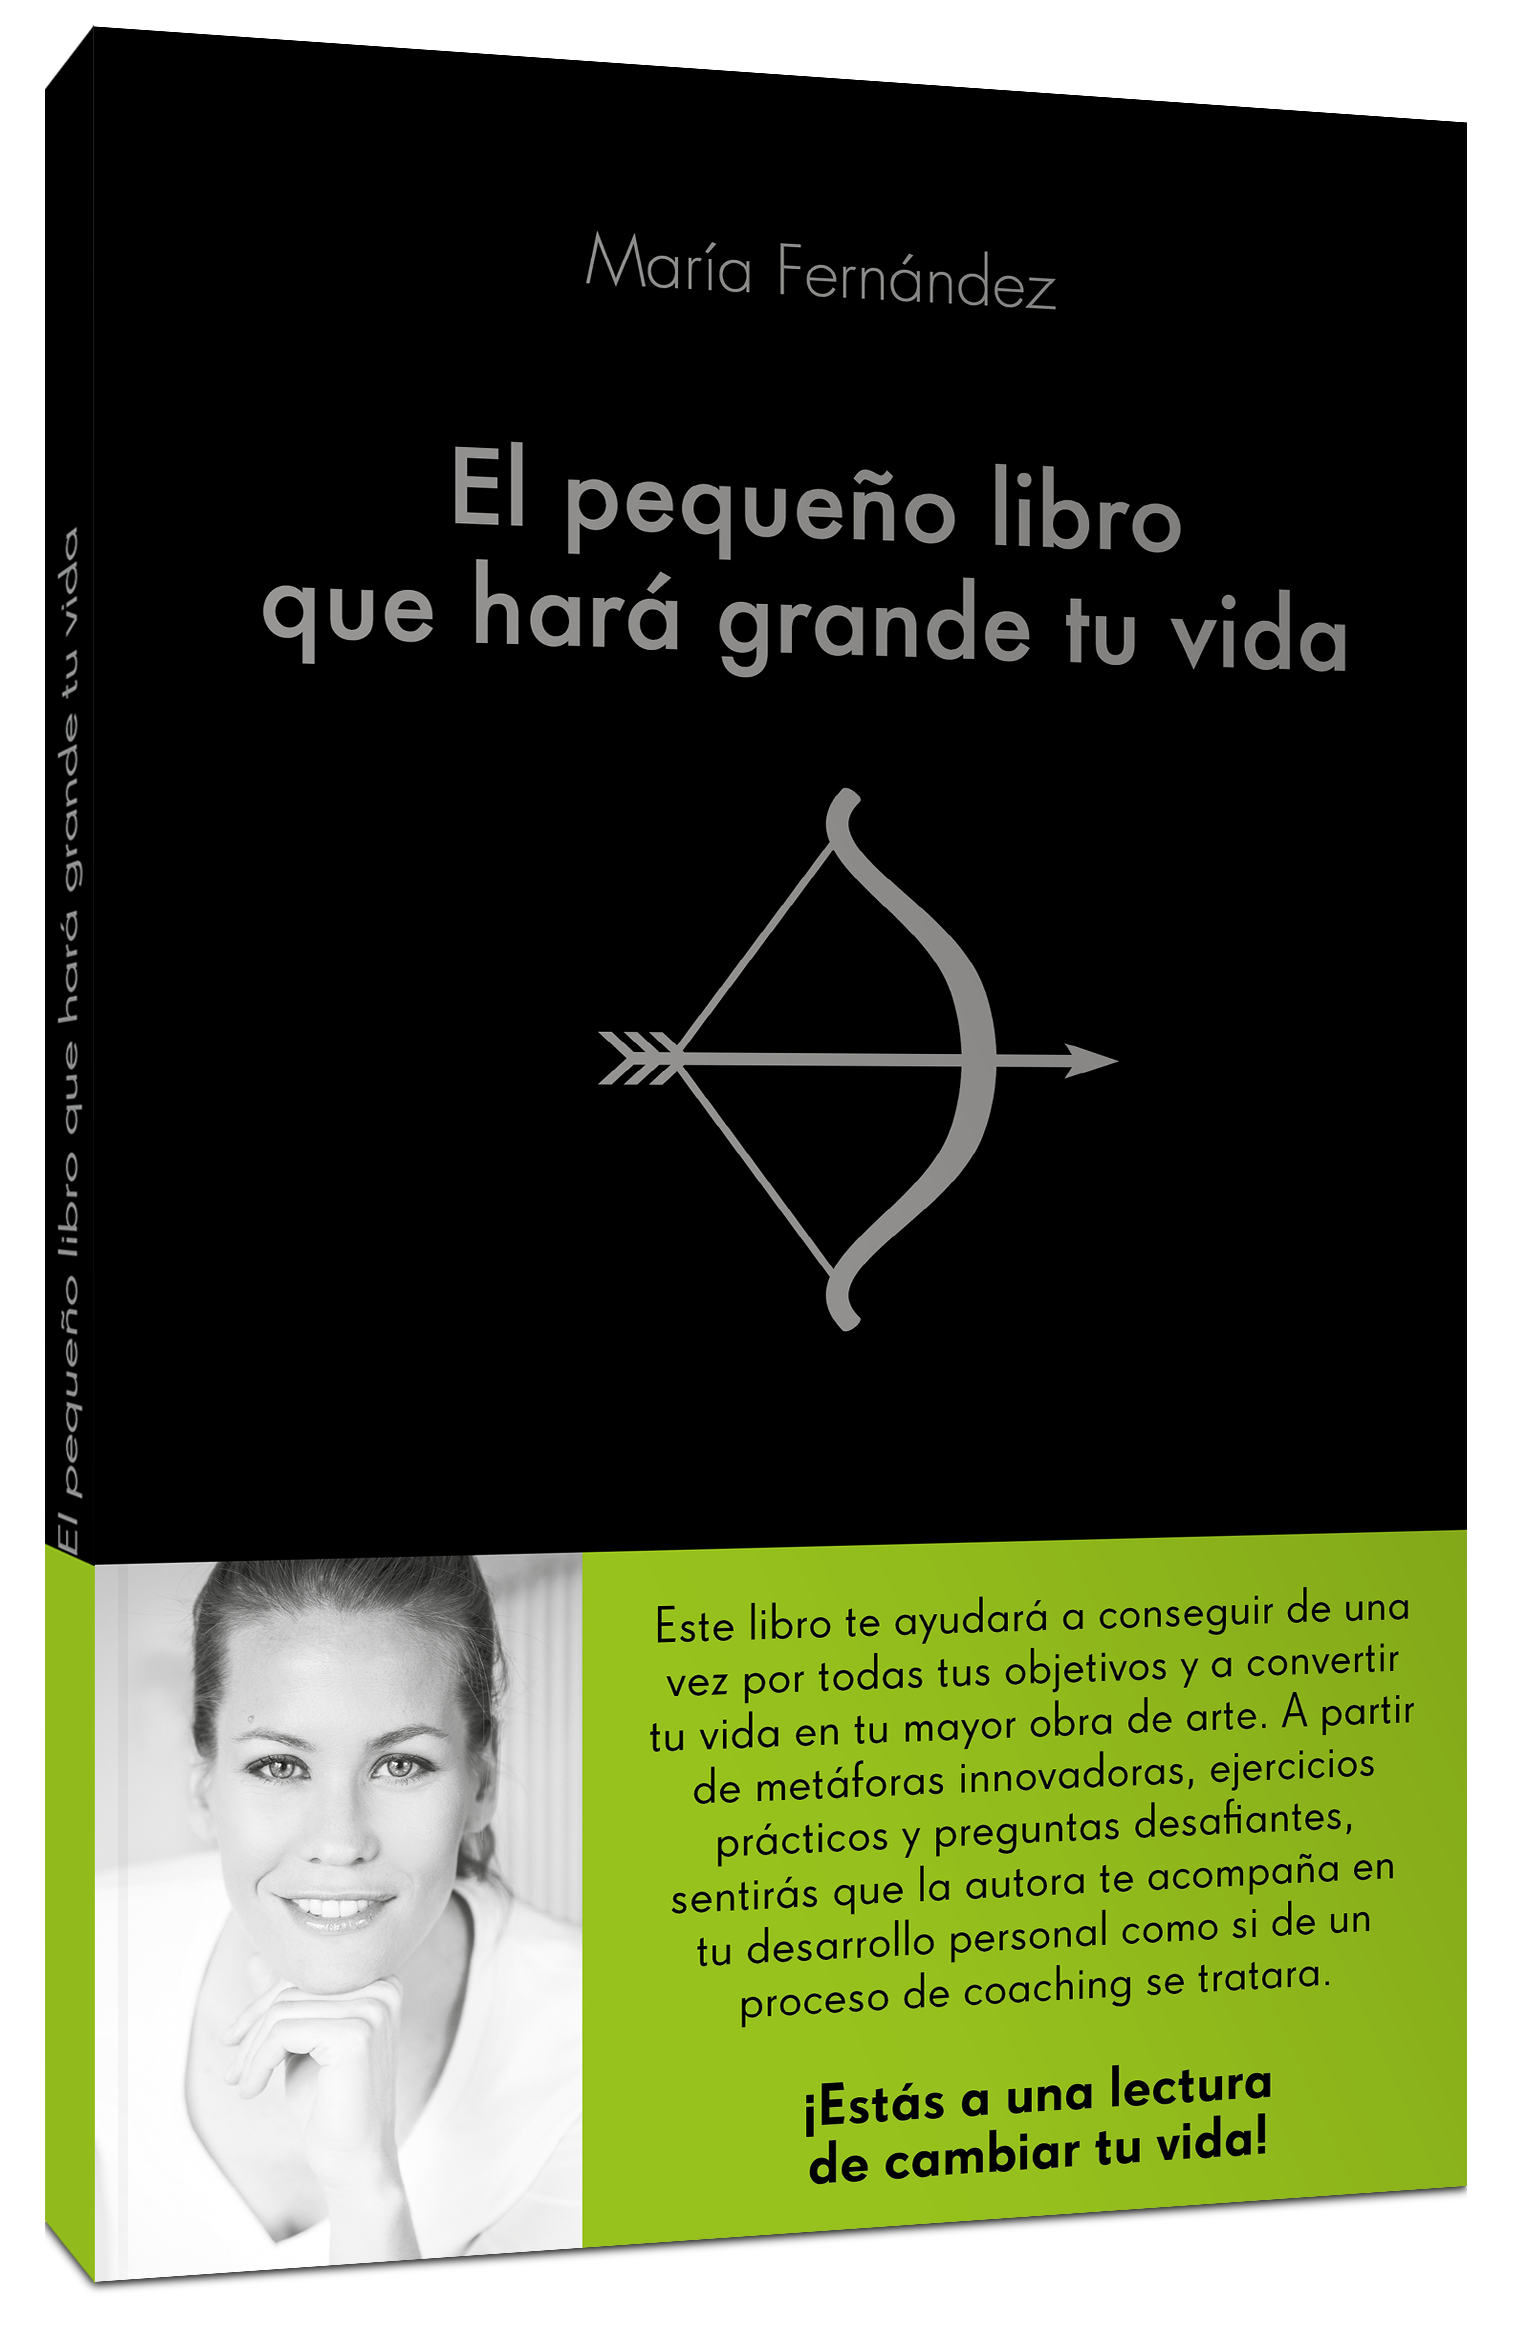 "El pequeño libro que hará grande tu vida" de María Fernández.